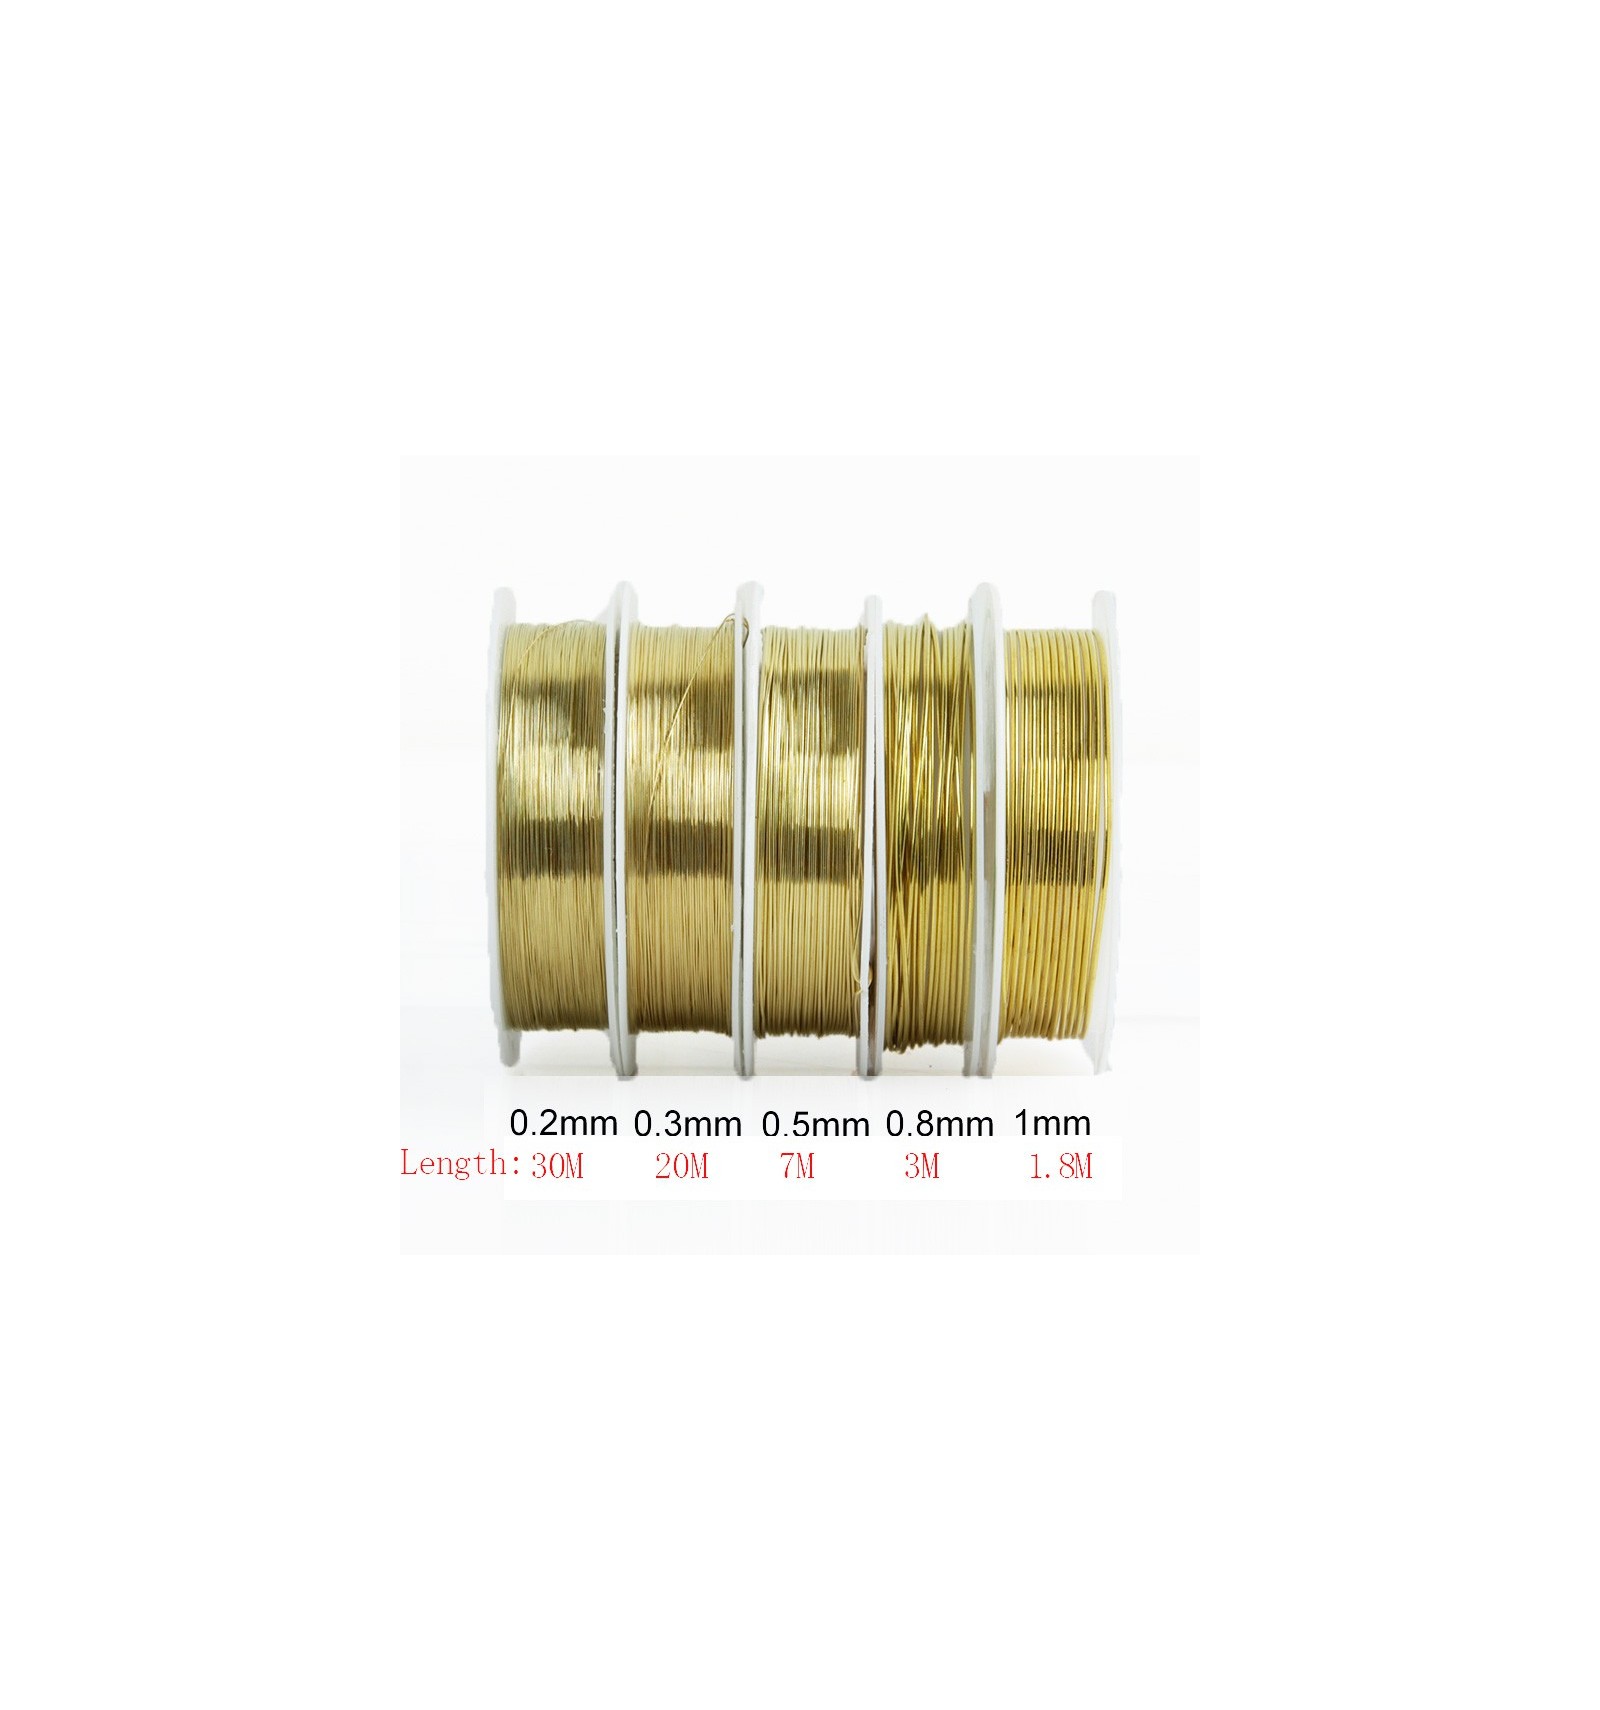 Fil en laiton pour bijoux doré 0.4 mm : fil pour fabrication de bijoux